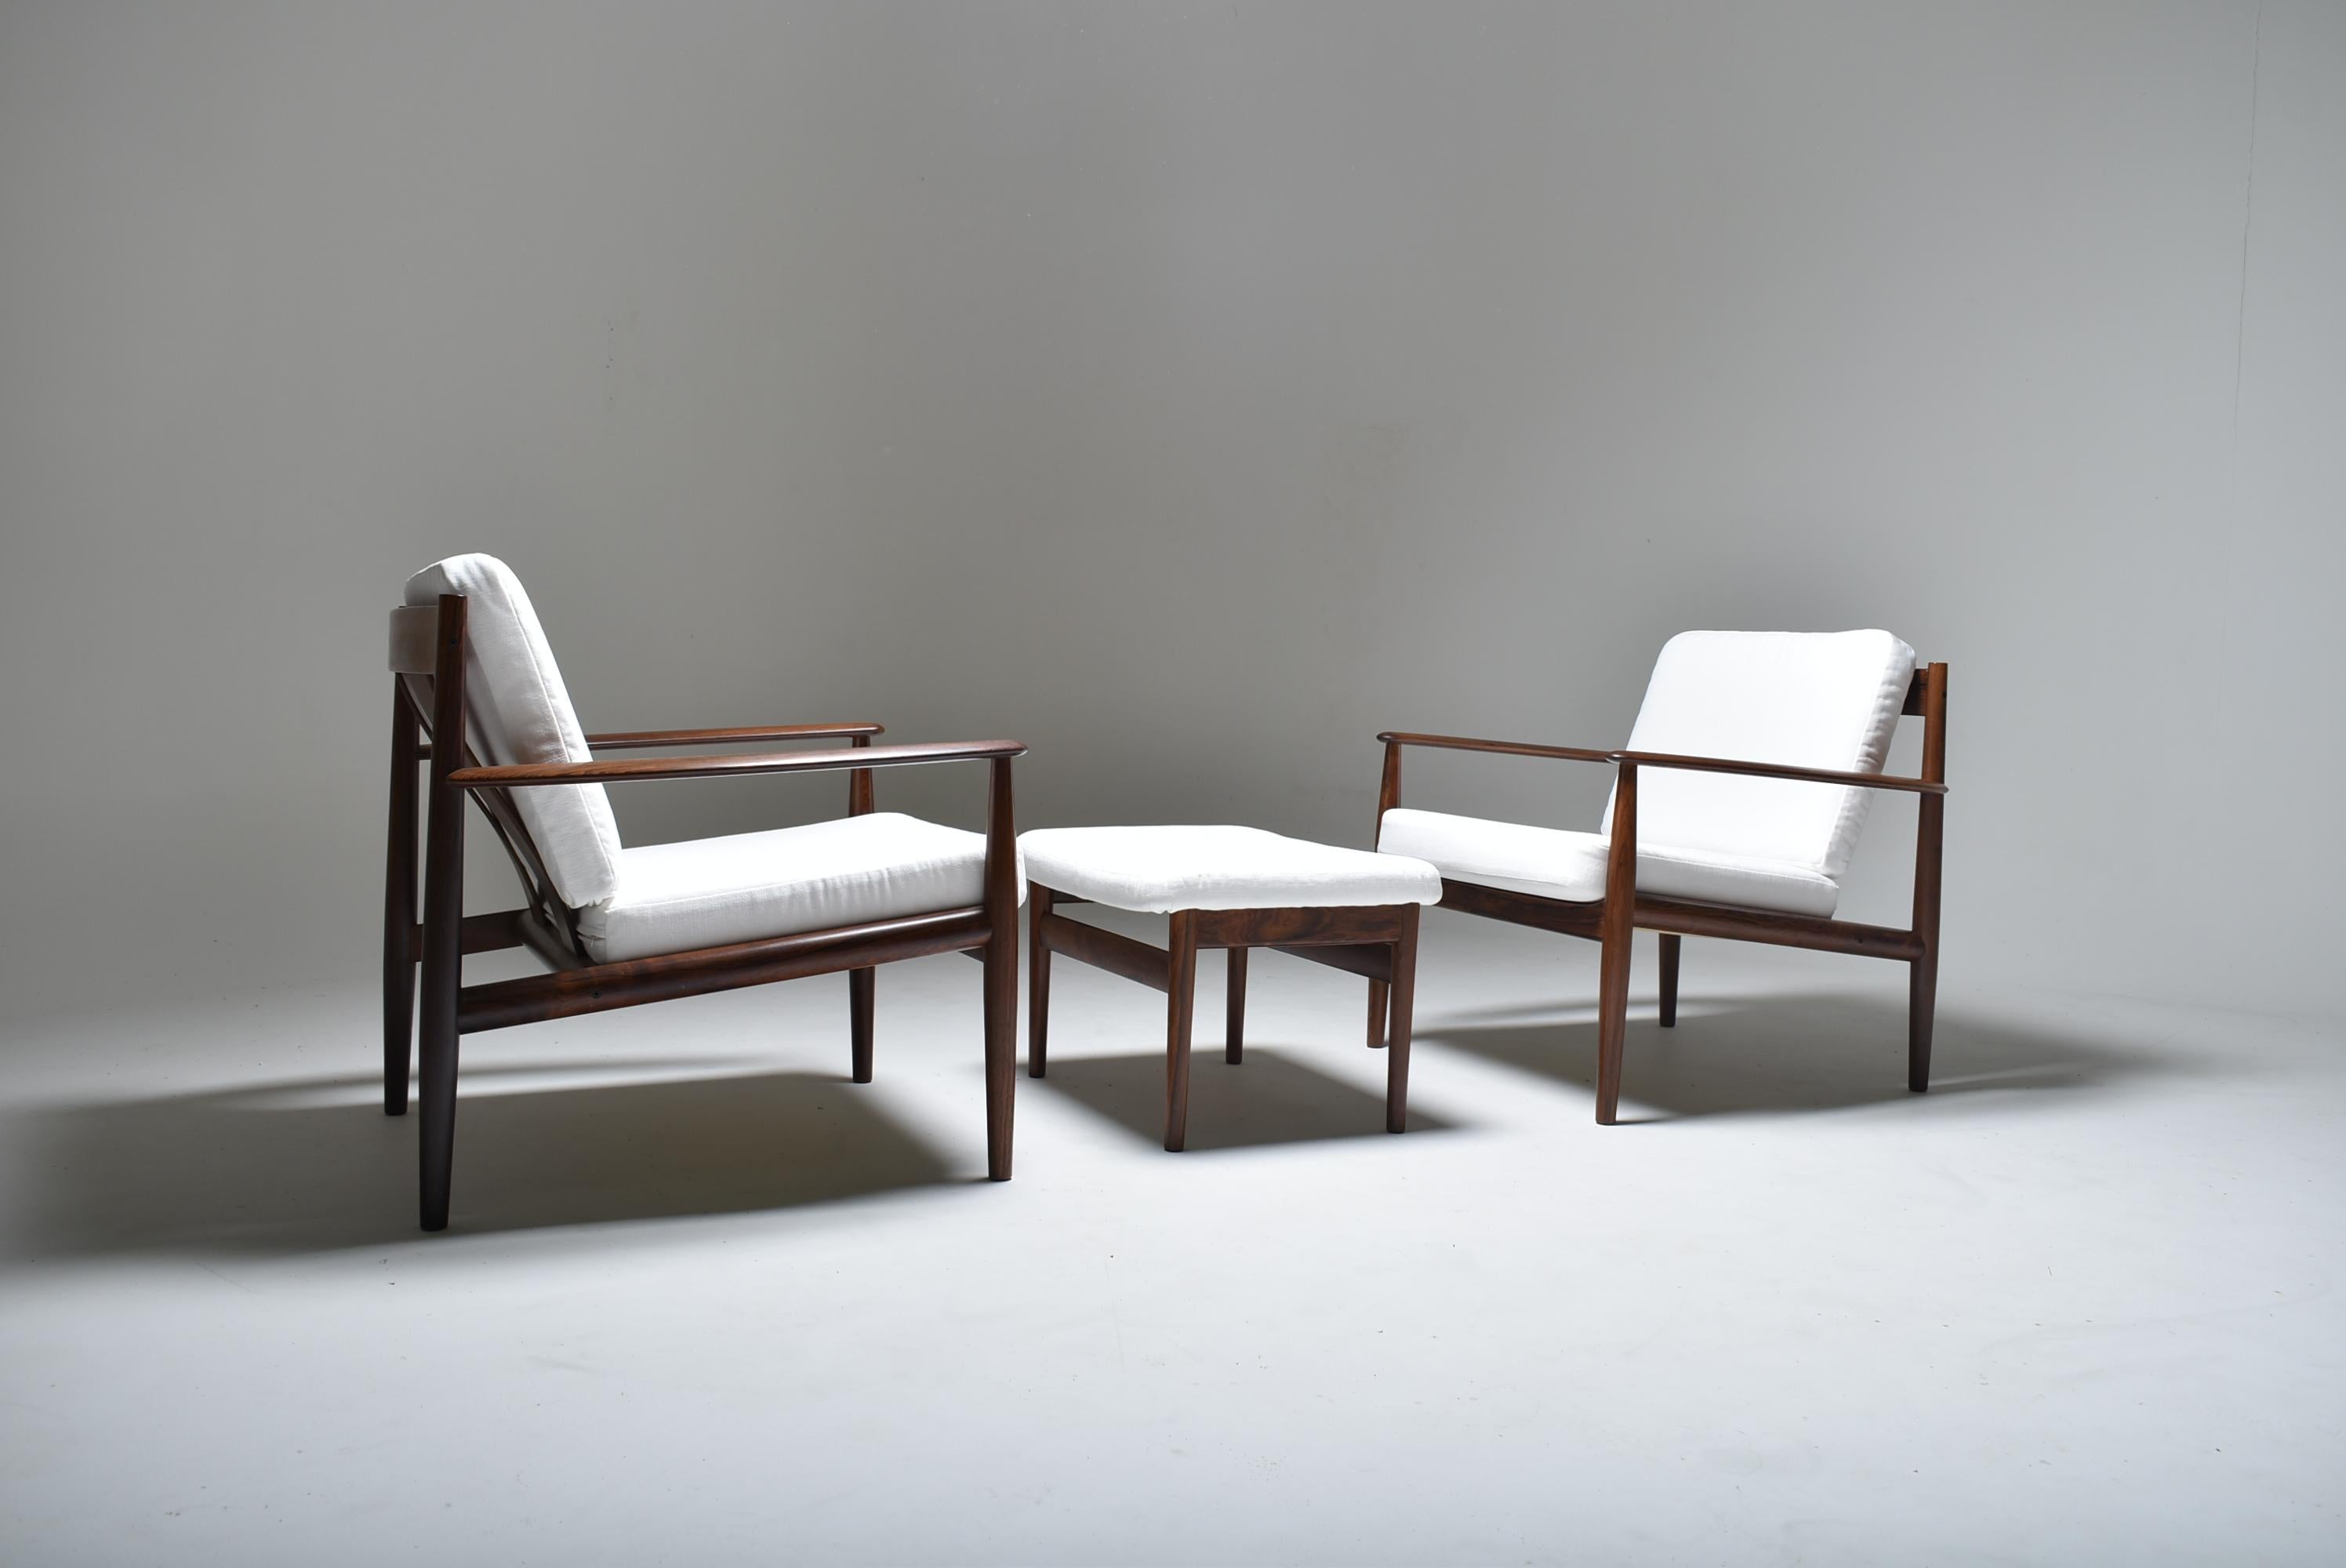 Set aus zwei Loungesesseln Modell 128 und einer Ottomane, entworfen von Grete Jalk, Dänemark.
Ein wahrer Klassiker durch die Verbindung von leichtem und elegantem Design und perfekt ausgewogenem Komfort. Vielleicht der beste Entwurf von Grete Jalk.